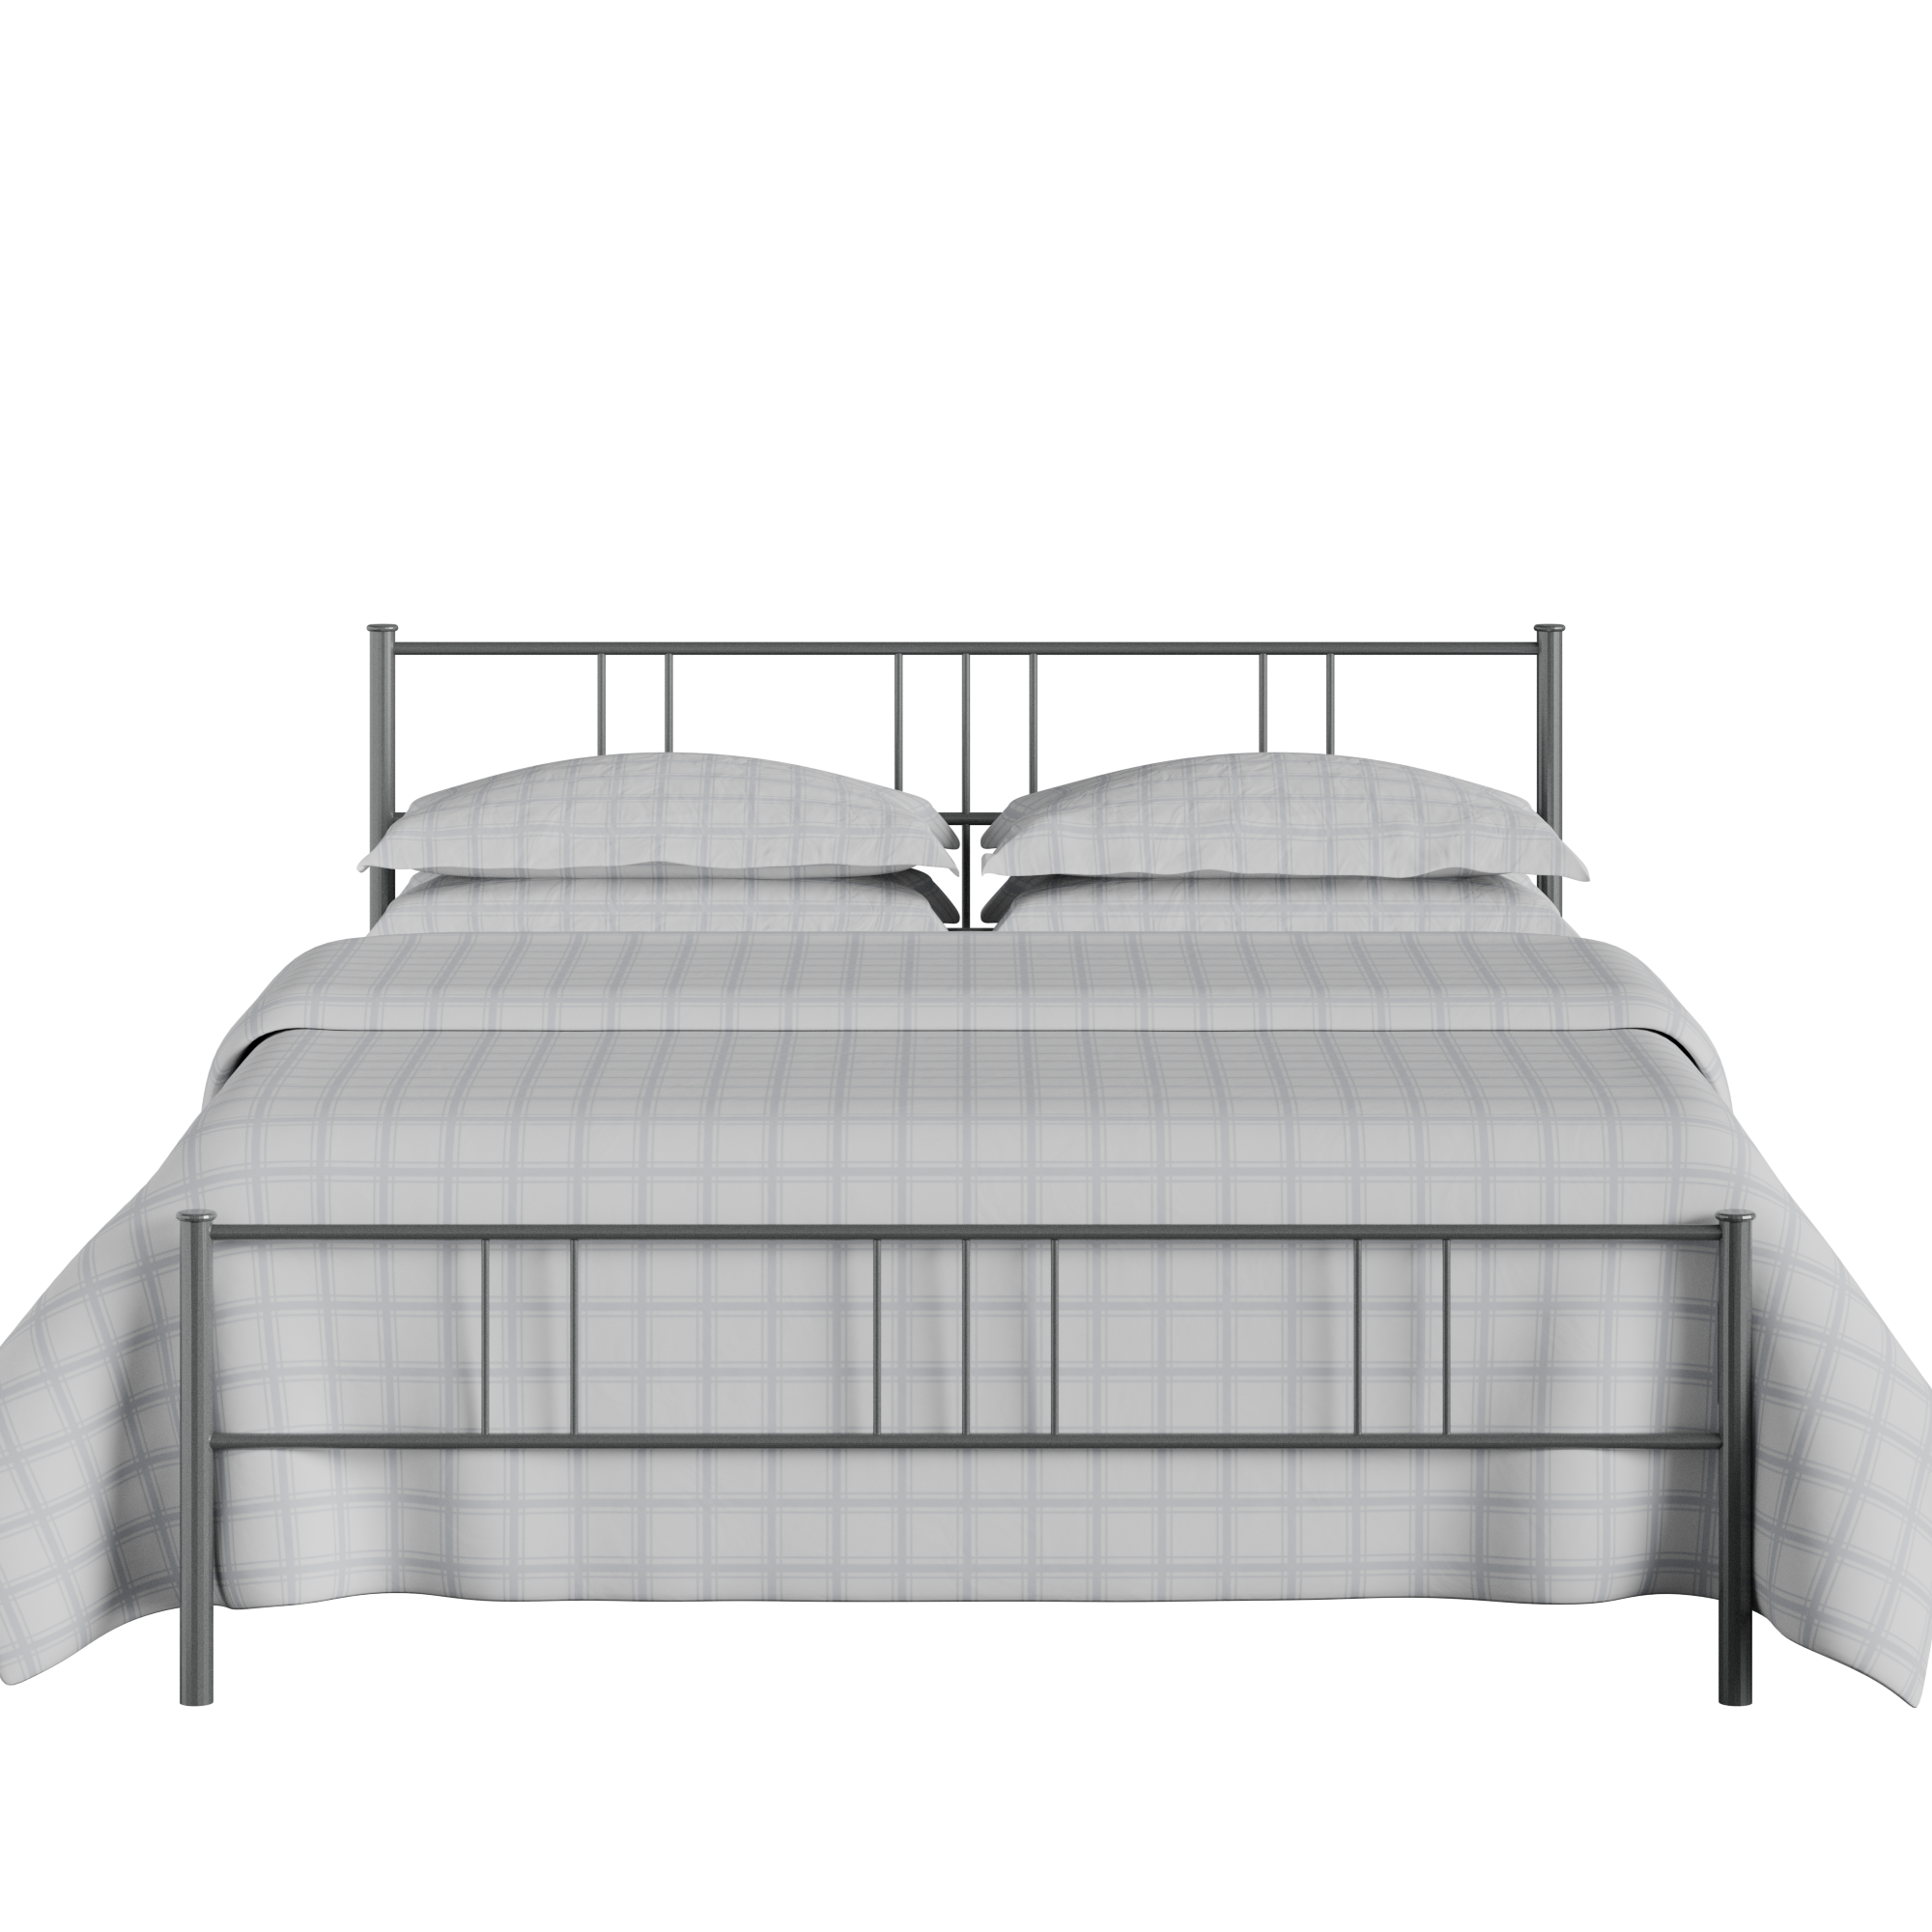 Mortlake iron/metal bed in pewter